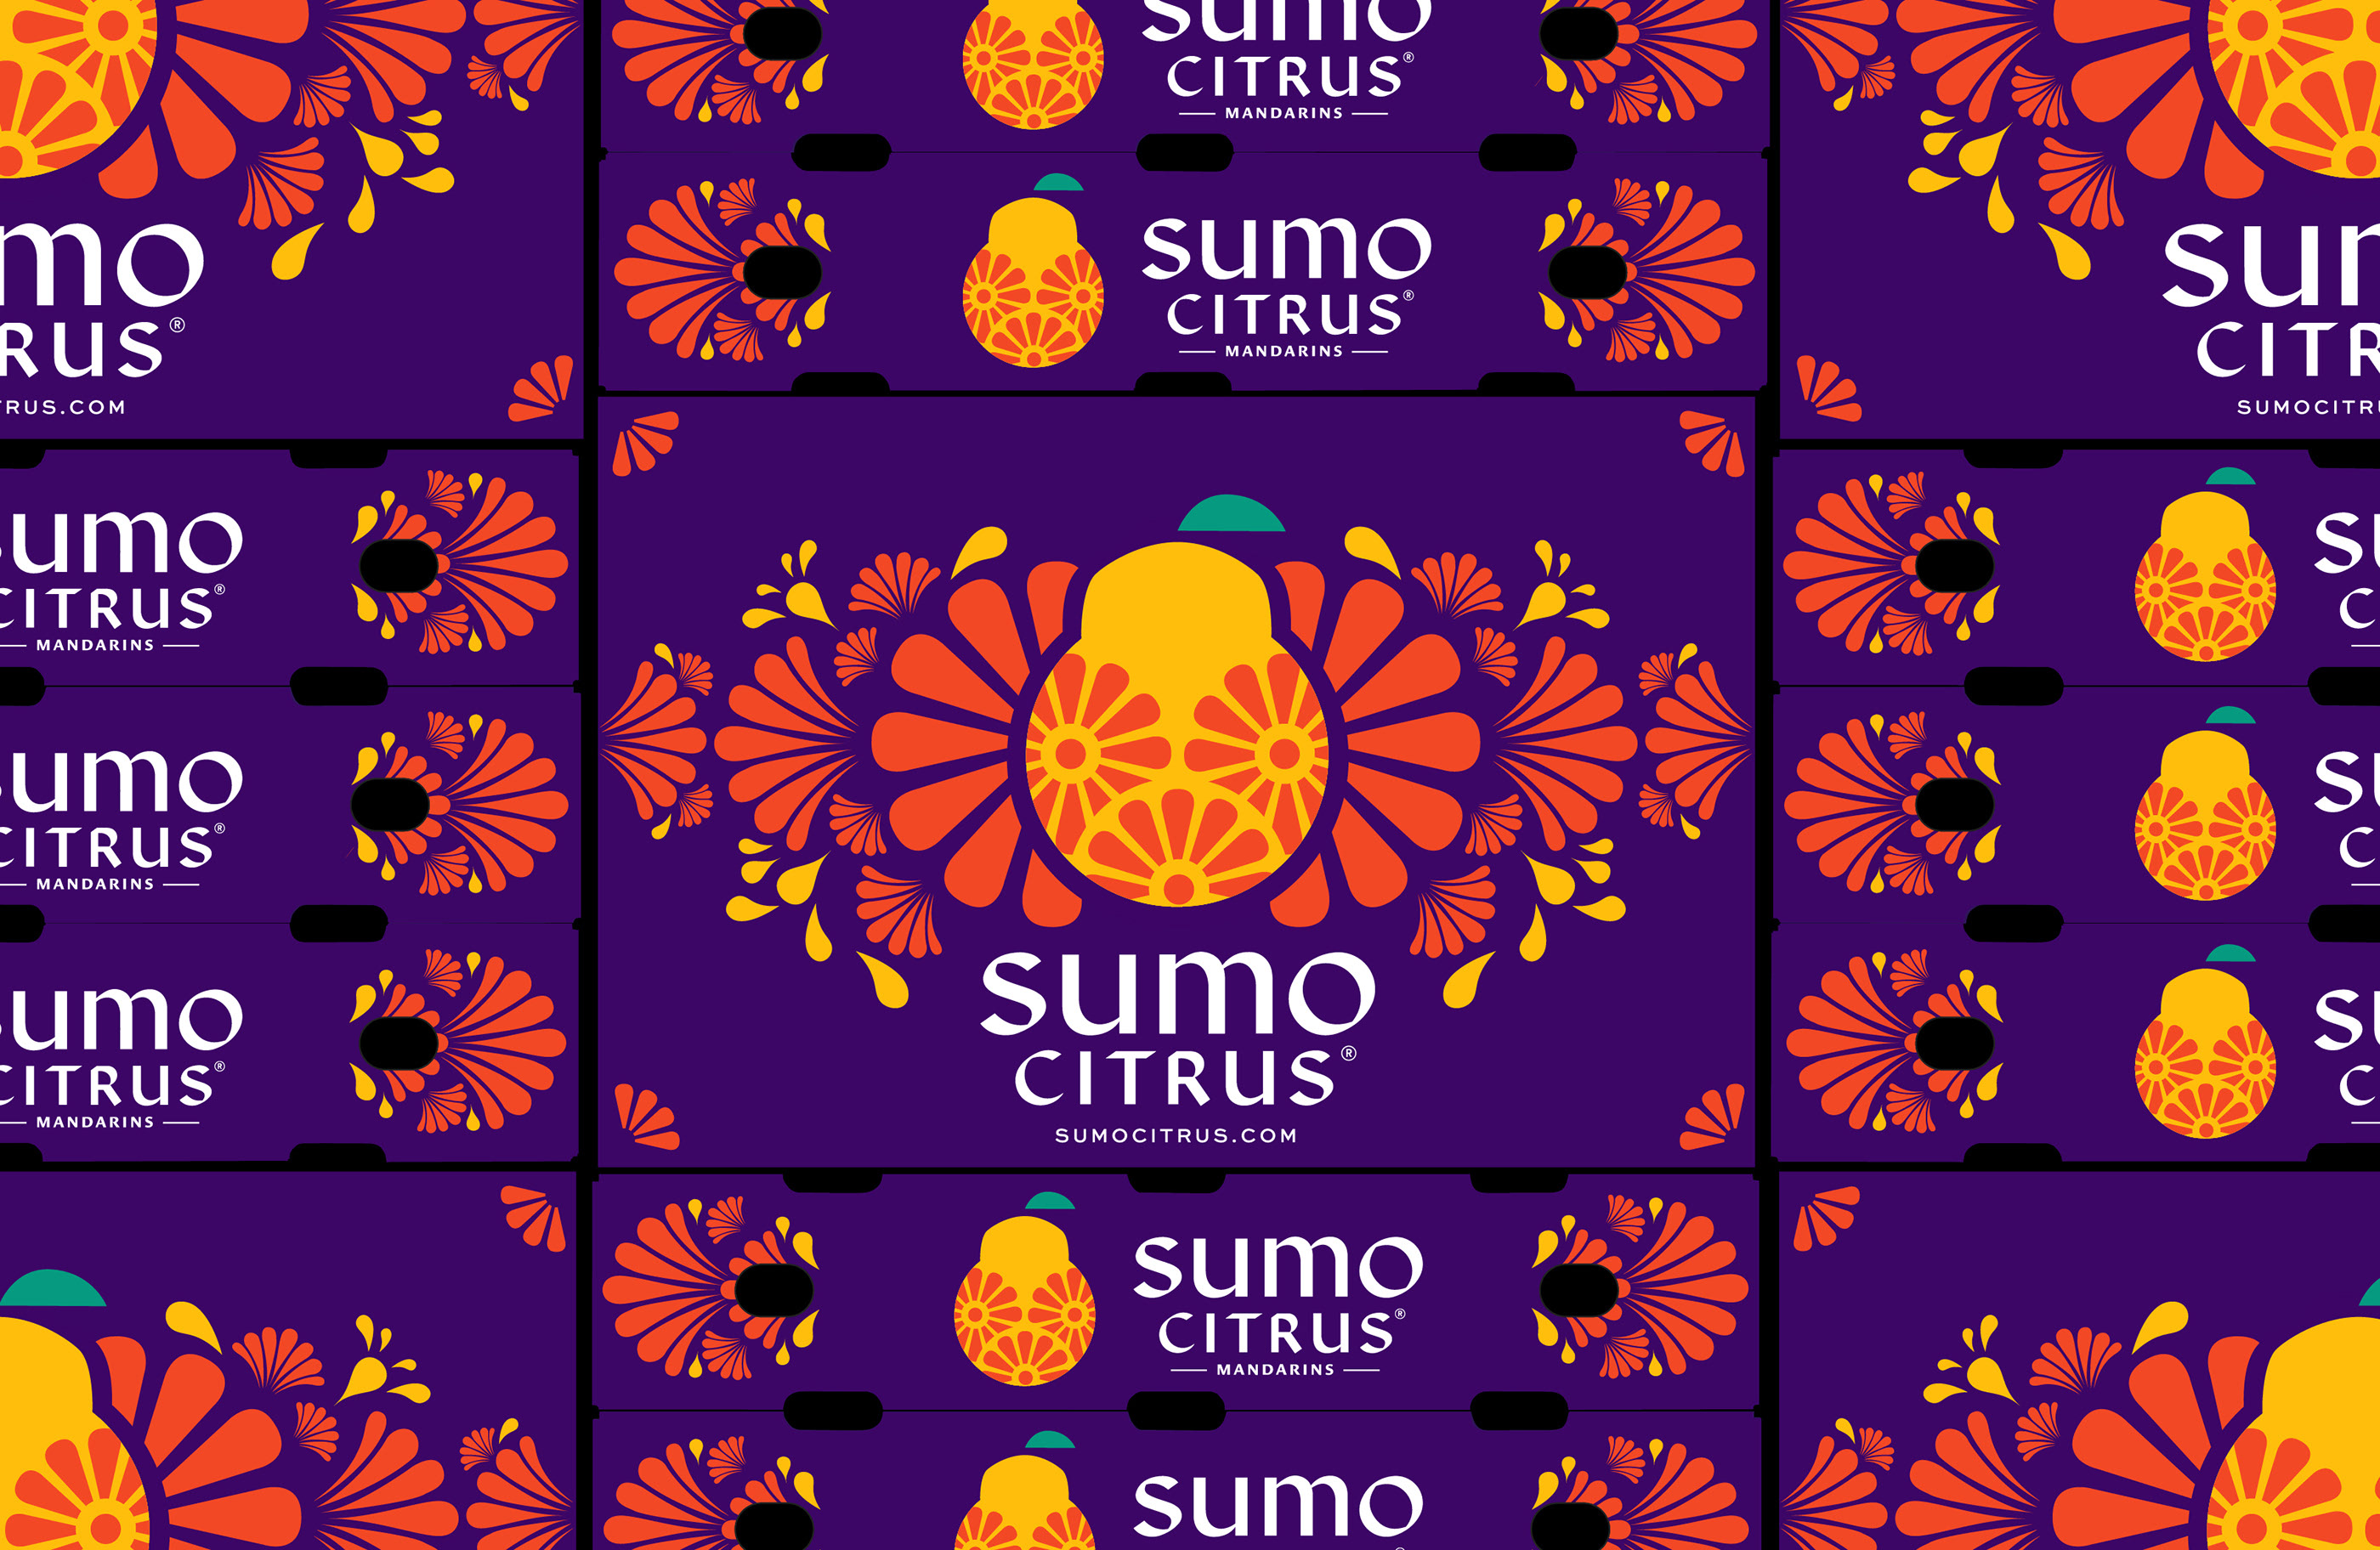 外国柑橘包装设计 柑橘包装设计哪家好 柑橘包装设计公司 第9张